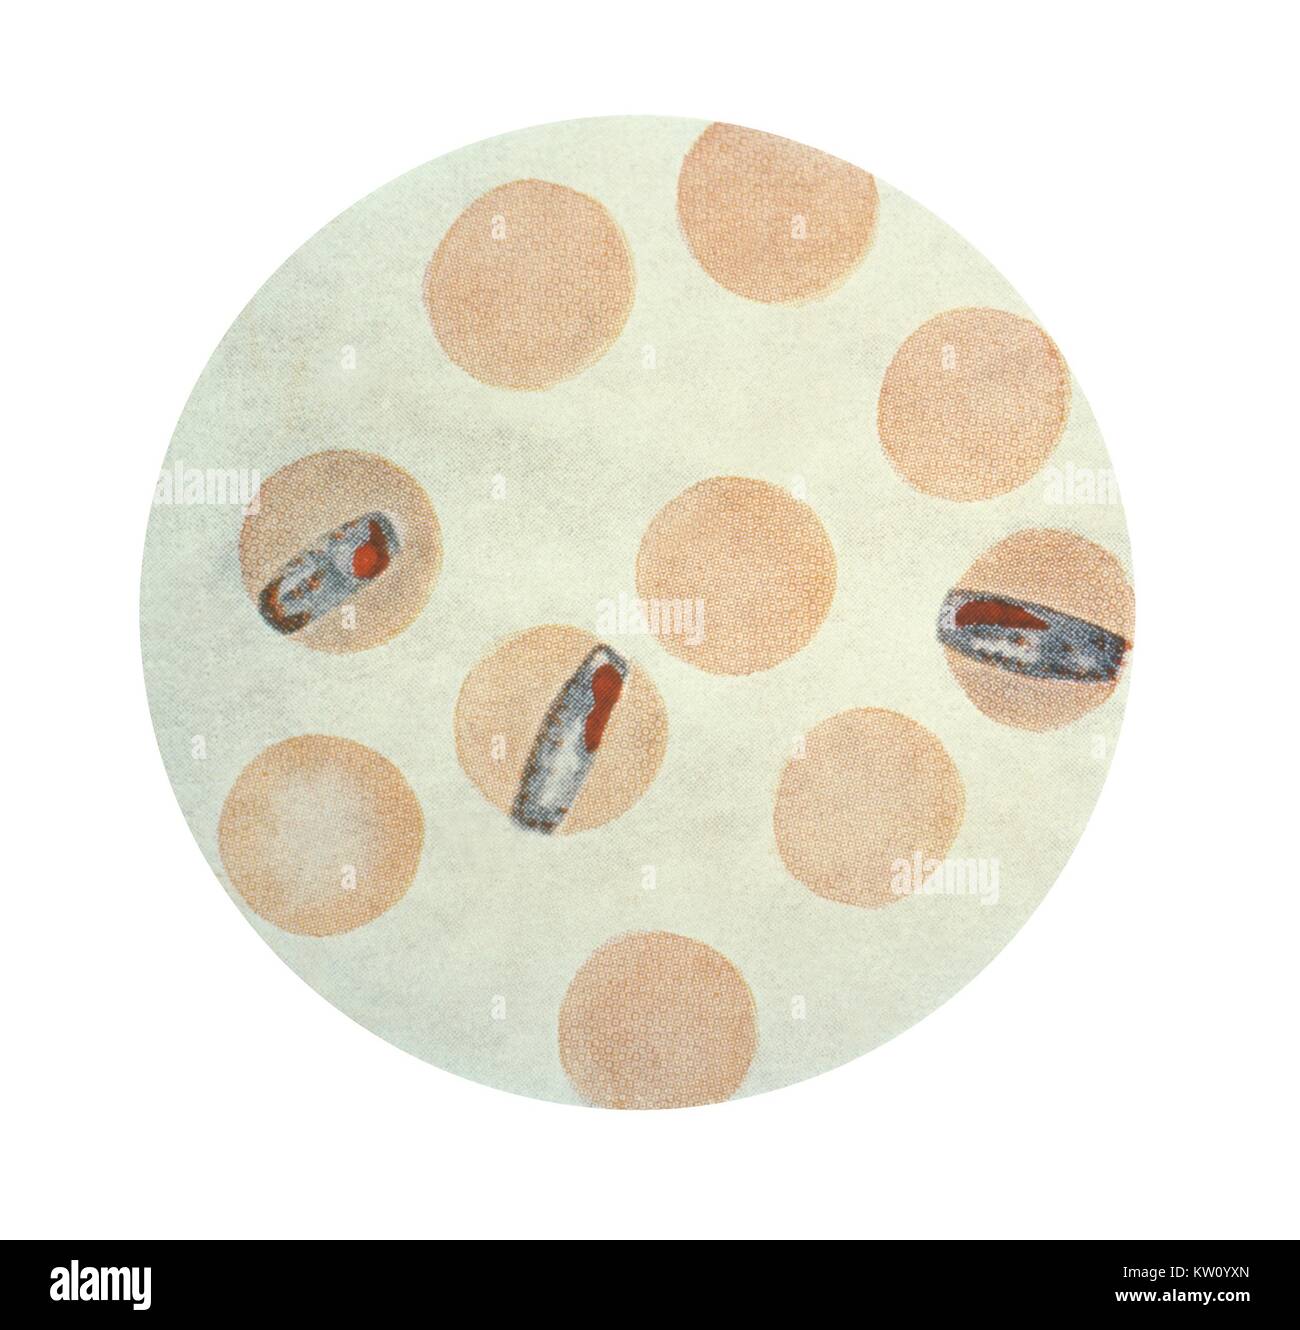 Esta ilustración muestra el Plasmodium malariae en su etapa schizont eritrocitarios mediante tinción de Wright, magnificada x1500. P. malariae, paludismo, quartan produce paroxismos febriles en un ciclo de 72 horas. Las recaídas pueden ocurrir a veces medio siglo después de ser infectados. Imagen cortesía de CDC, 1979. Foto de stock